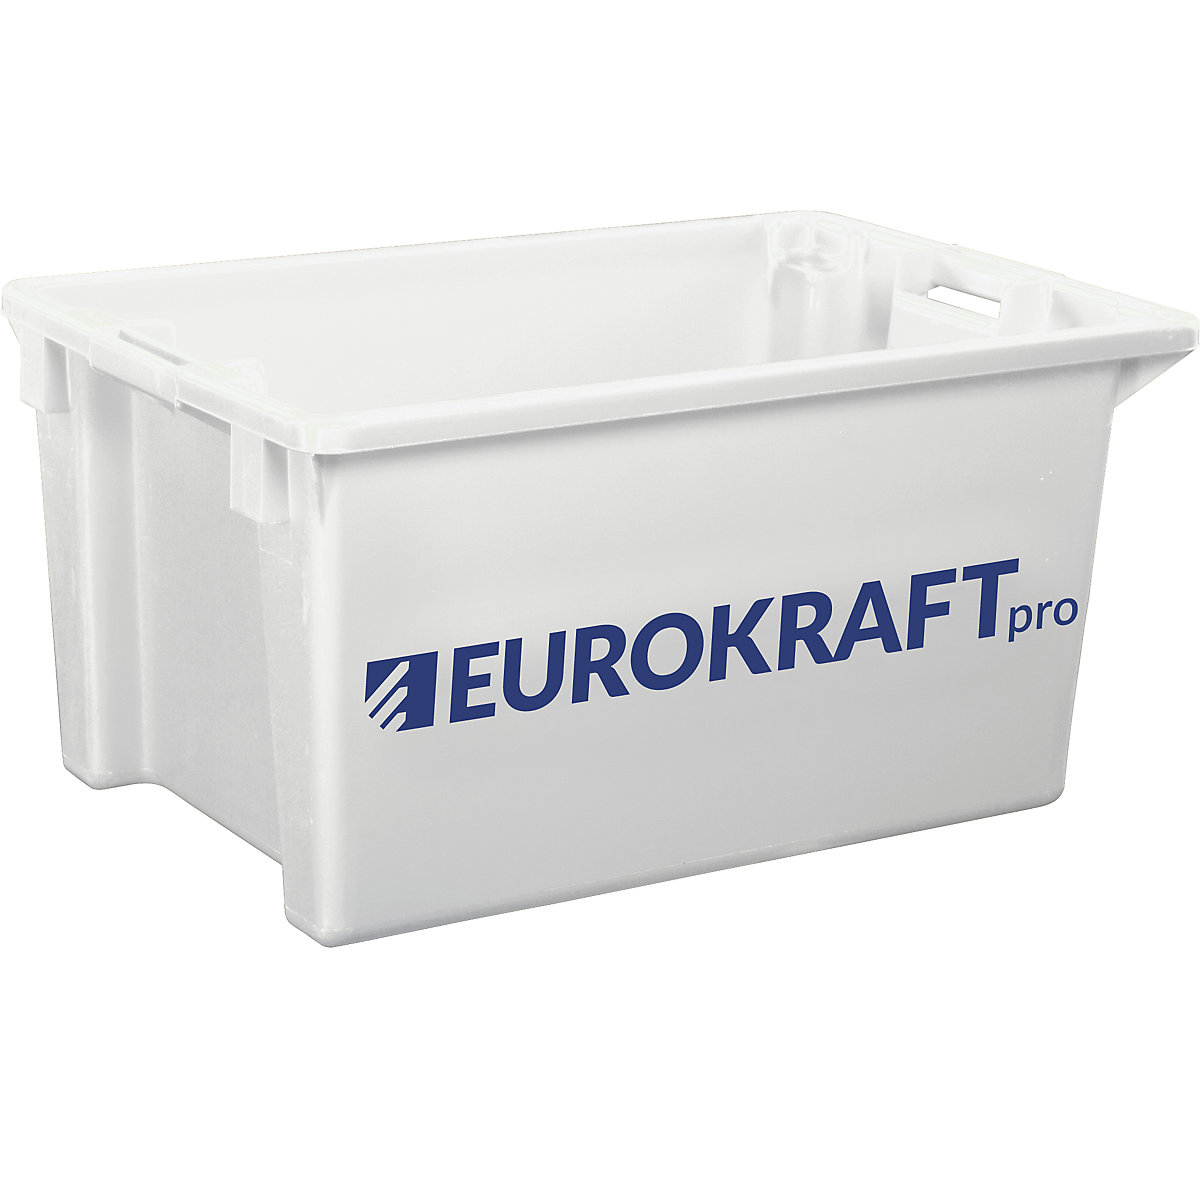 EUROKRAFTpro – Otočná stohovacia nádoba z polypropylénu vhodného pre potraviny, objem 70 litrov, OJ 2 ks, steny a dno uzatvorené, prírodná